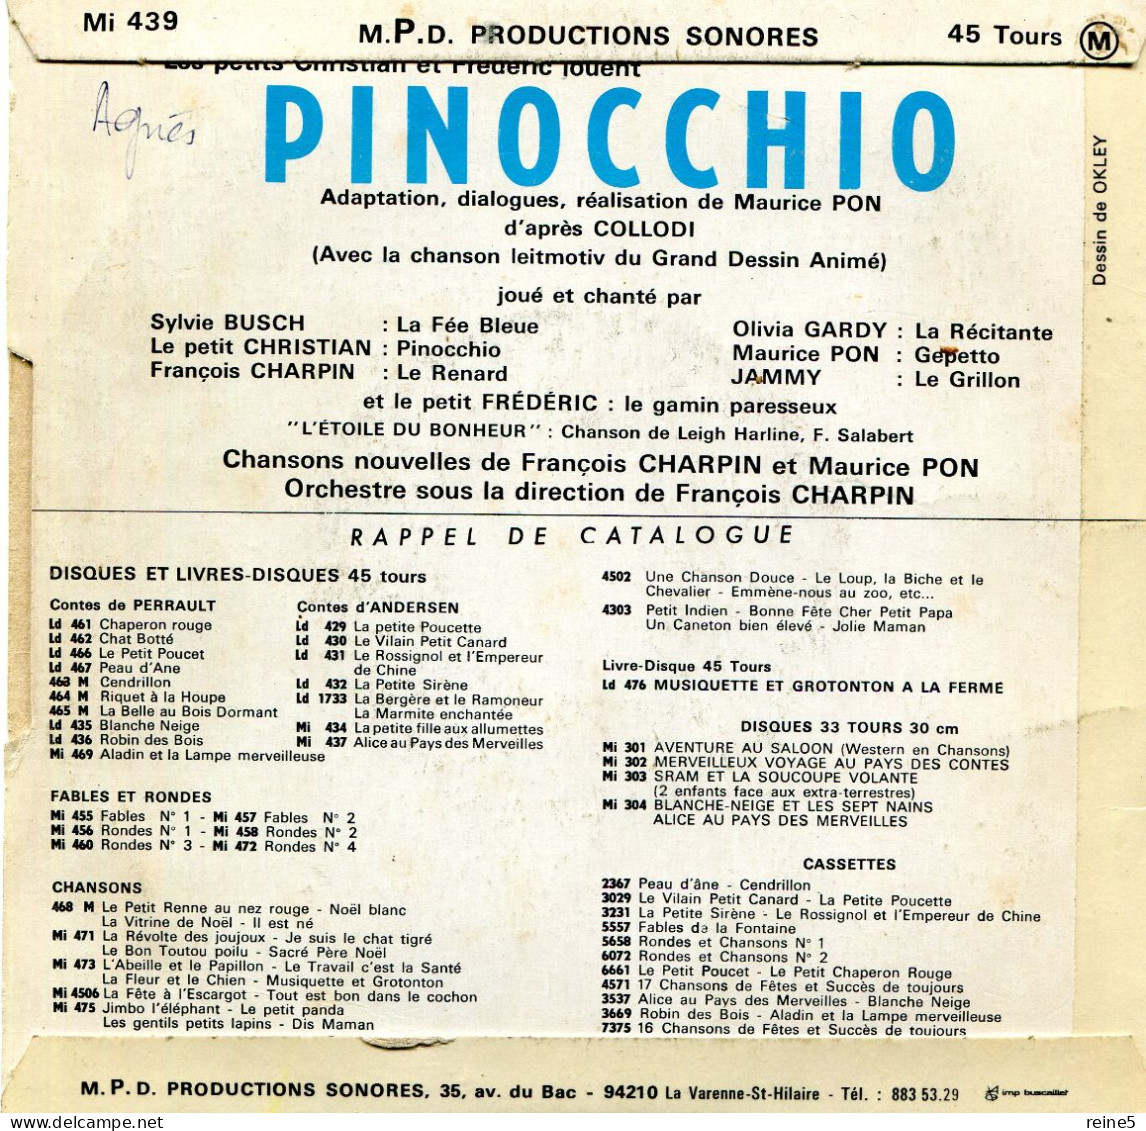 PINOCCHIO Avec LA CHANSON DU FILM >> VINYLE & POCHETTE BON USAGE REF-LEX-71-71A - Children